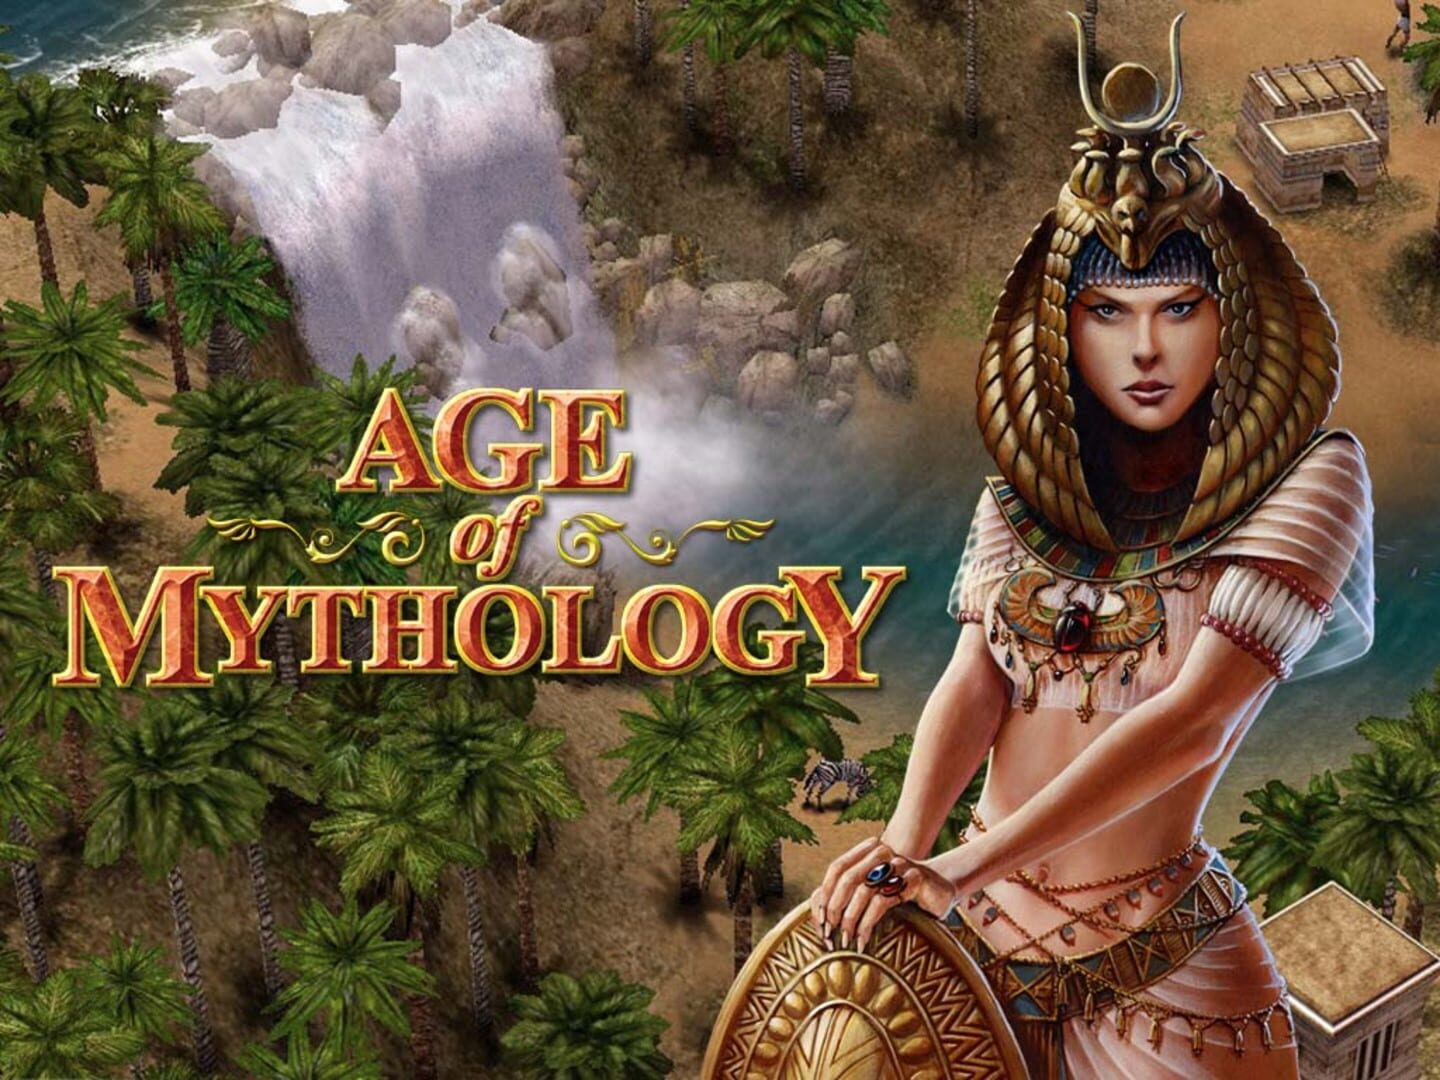 Arte - Age of Mythology